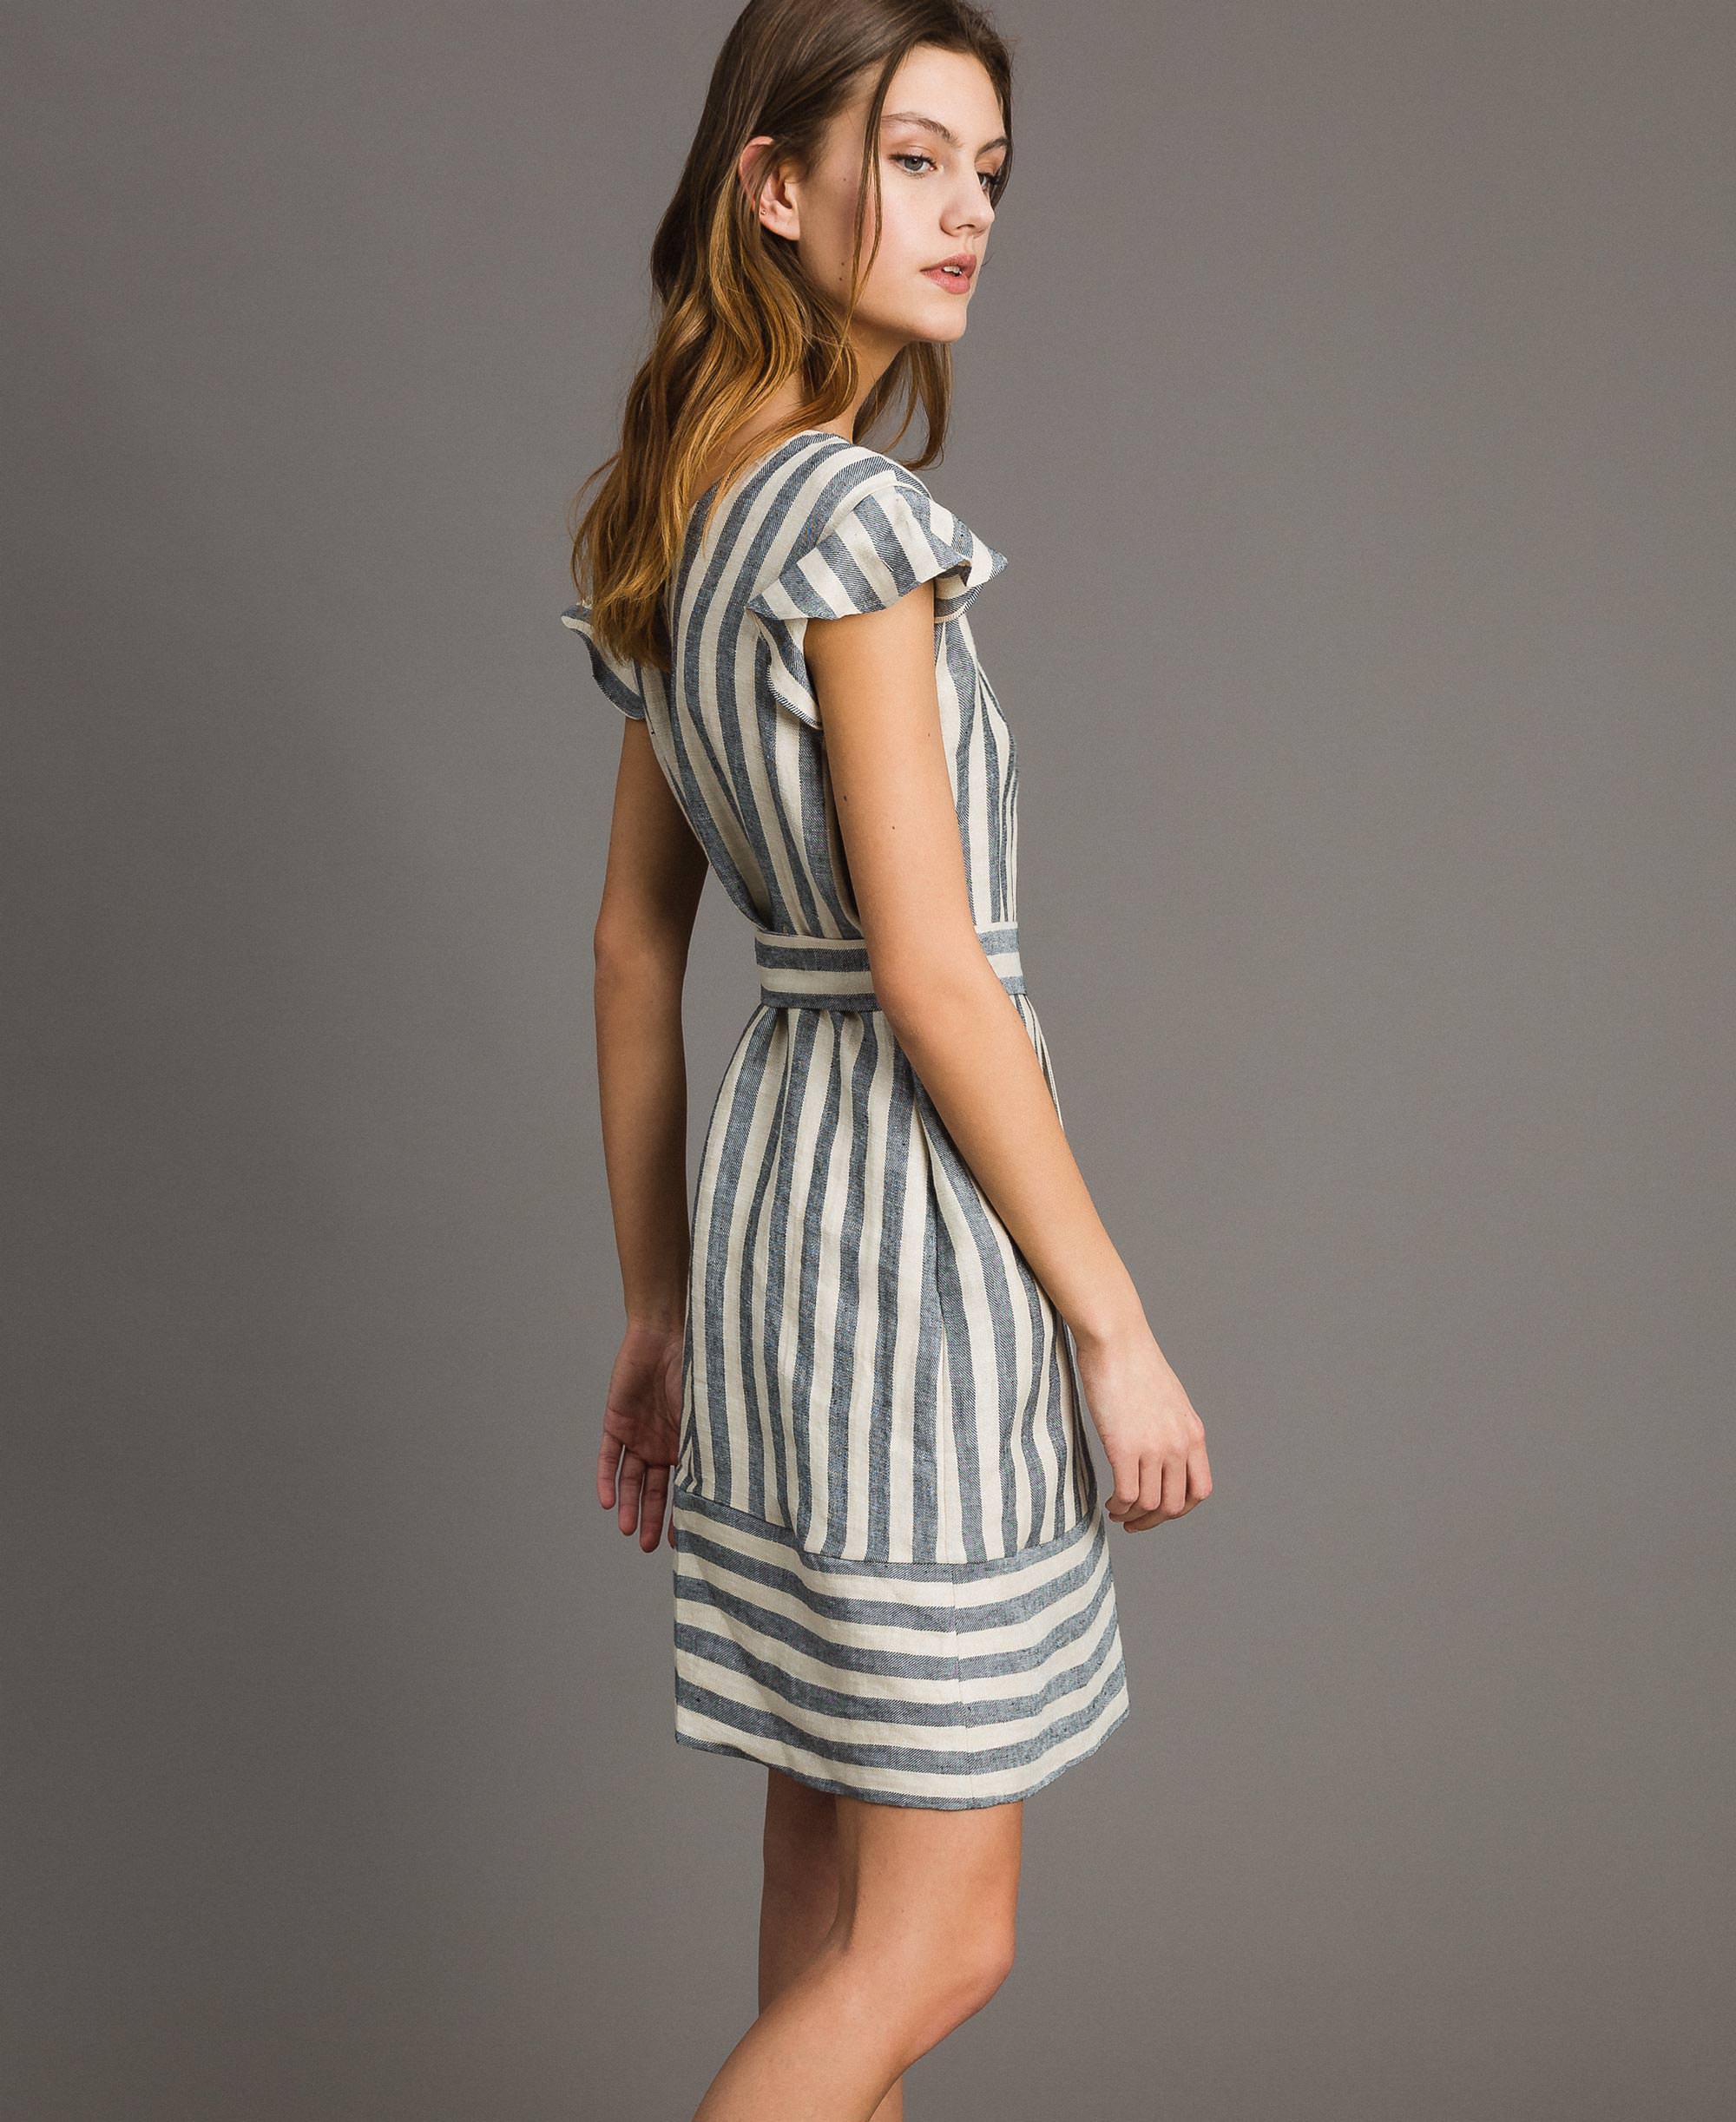 Two-tone striped linen dress